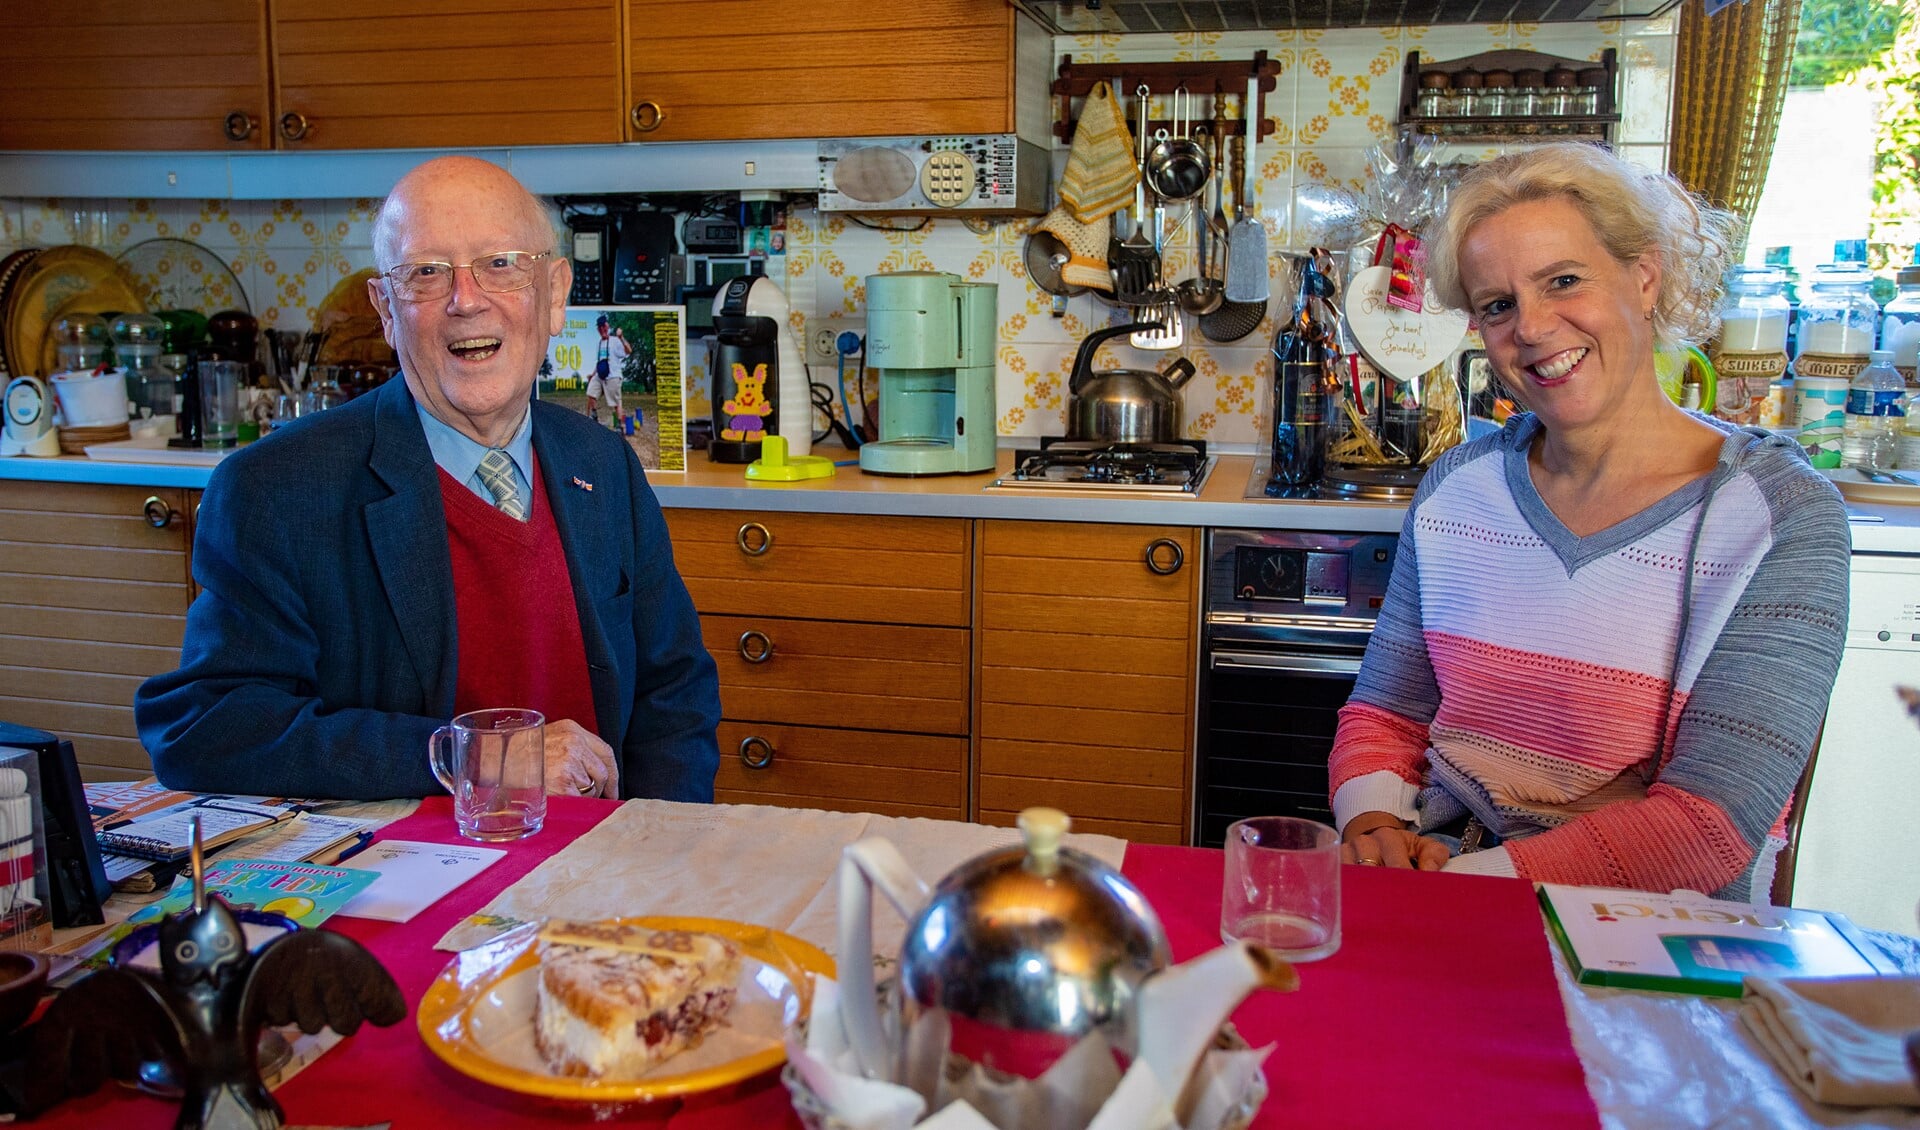 Hans en Lisette aan de grote tafel in de keuken van Hans.